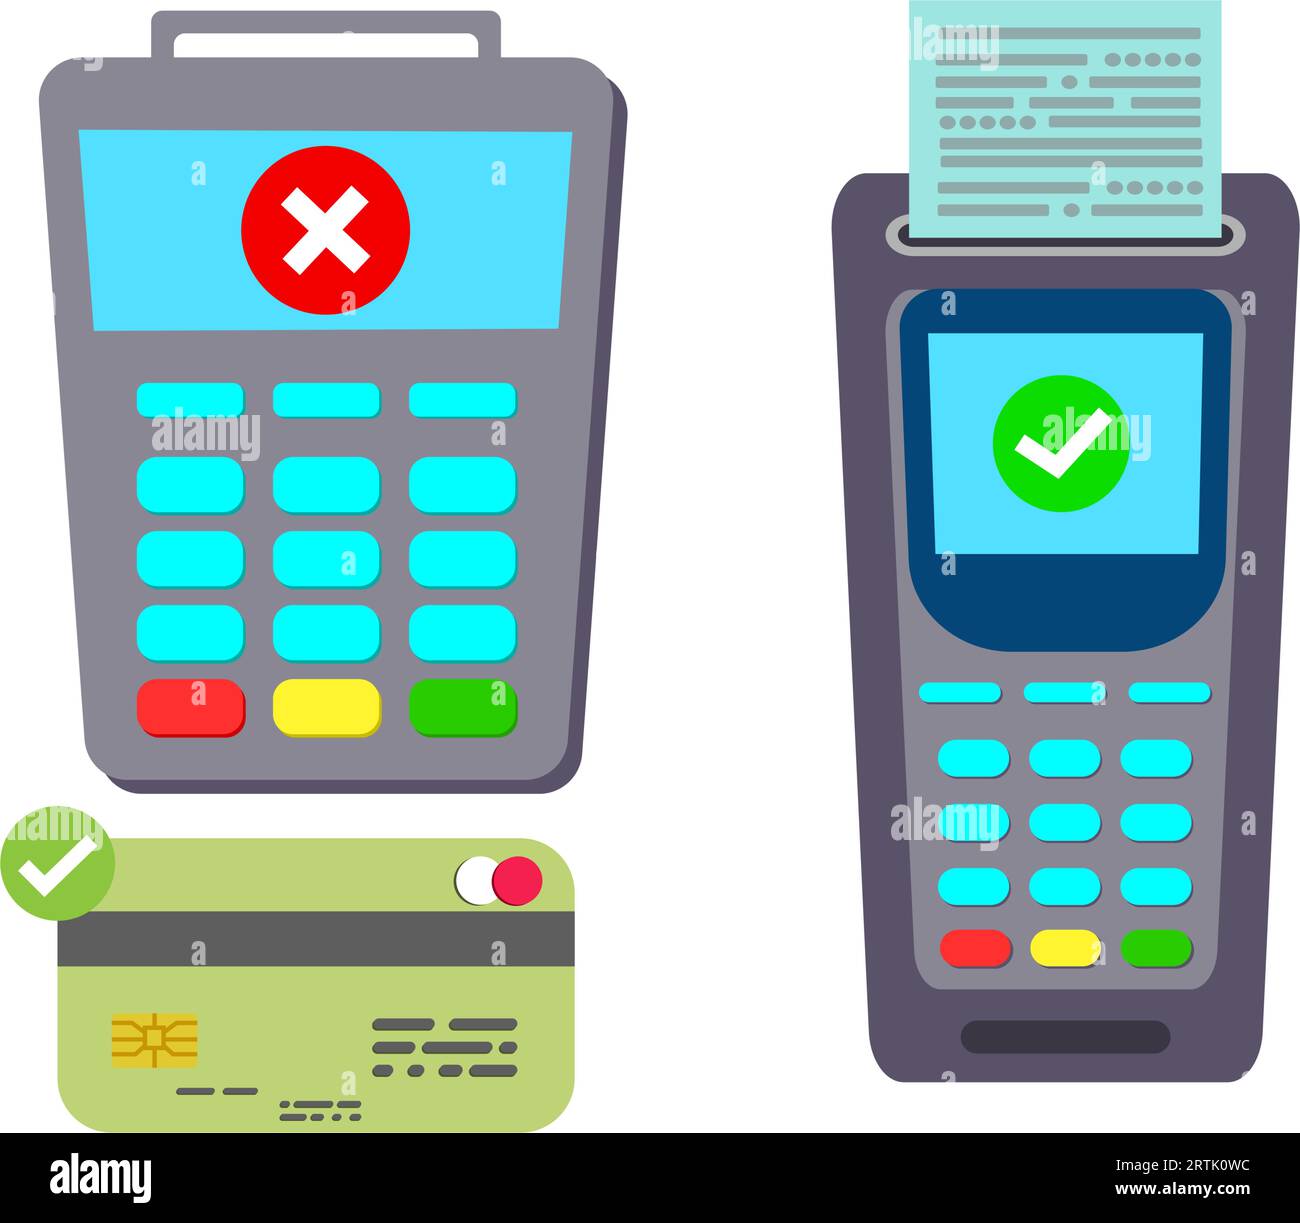 Zahlungsterminal-POS mit Bankkarte und Beleg drucken. Elektronische Transaktionsmaschine – bargeldlose Technologie. Kontaktlose Zahlungstransaktion Stock Vektor